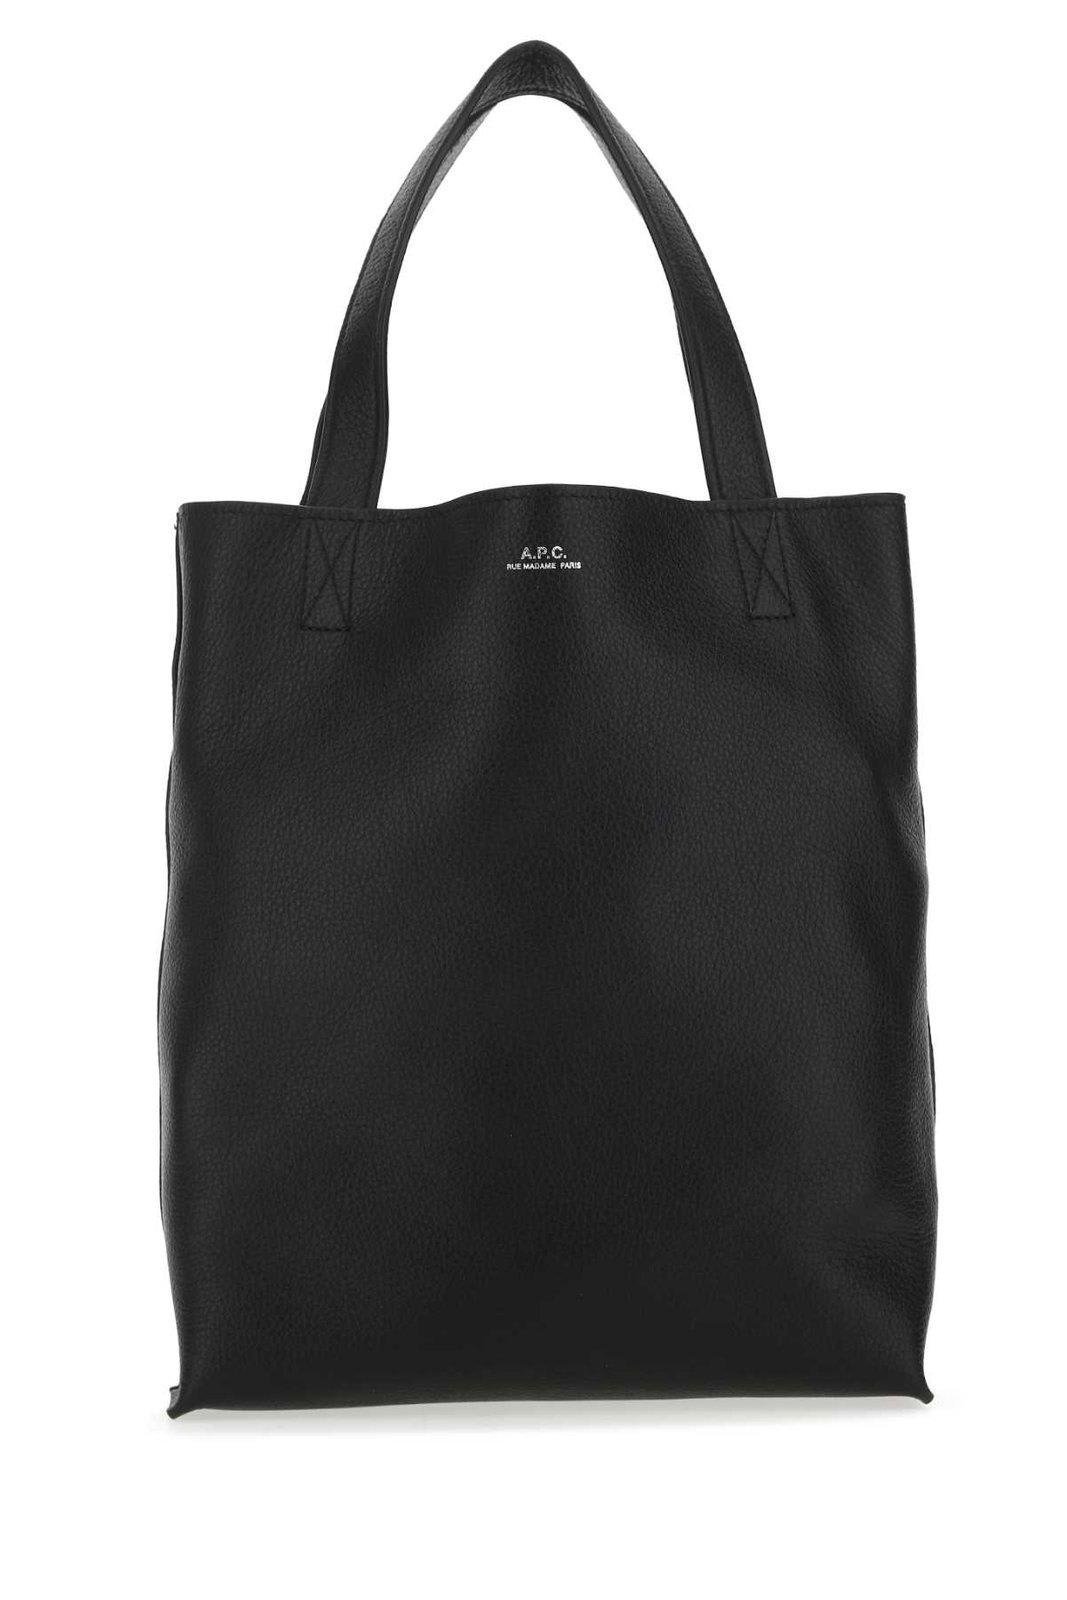 Apc Cabas Maiko Tote Bag In Lzz Black